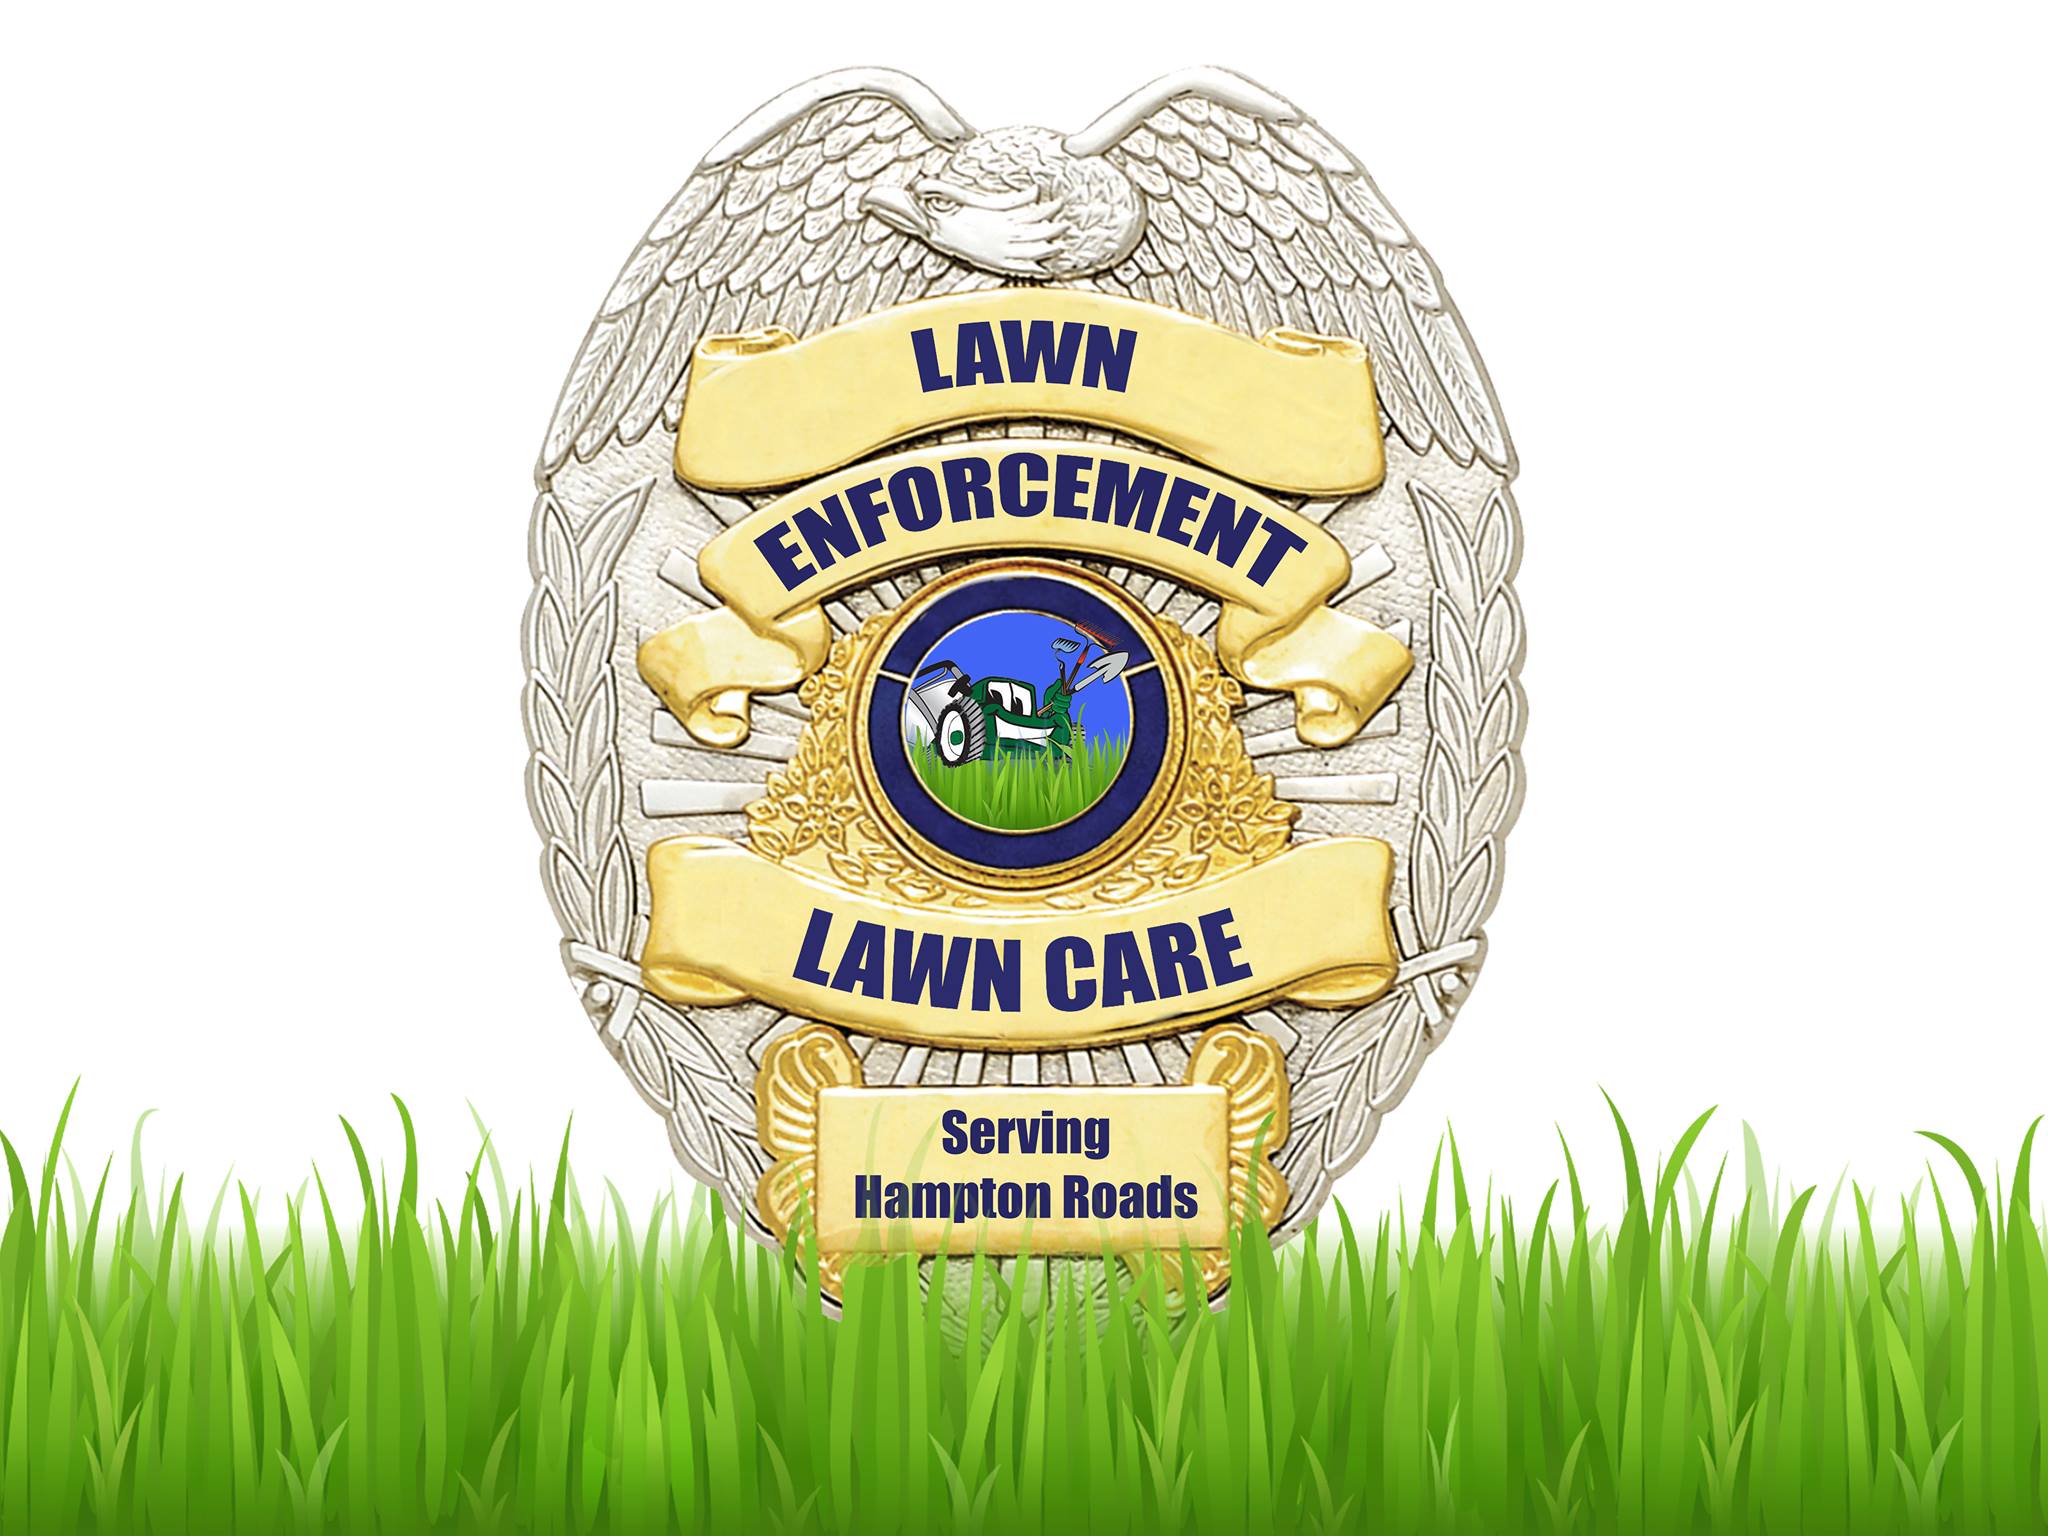 Lawn Enforcement Lawn Care